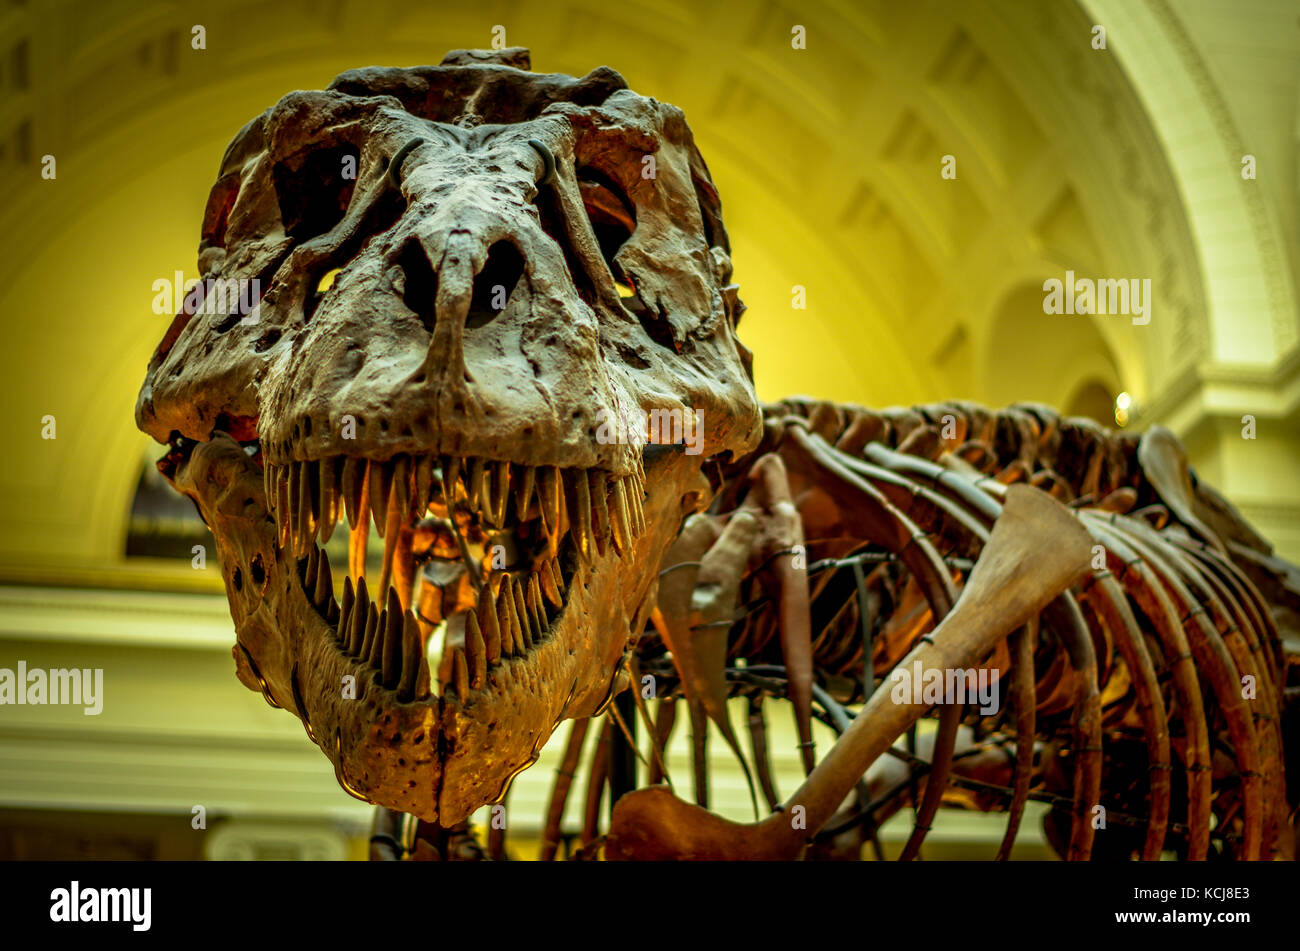 tiranosaurio - Tyrannosaurus rex - Página 5 Demandar-al-t-rex-el-tiranosaurio-rex-el-esqueleto-el-field-museum-chicago-kcj8e3